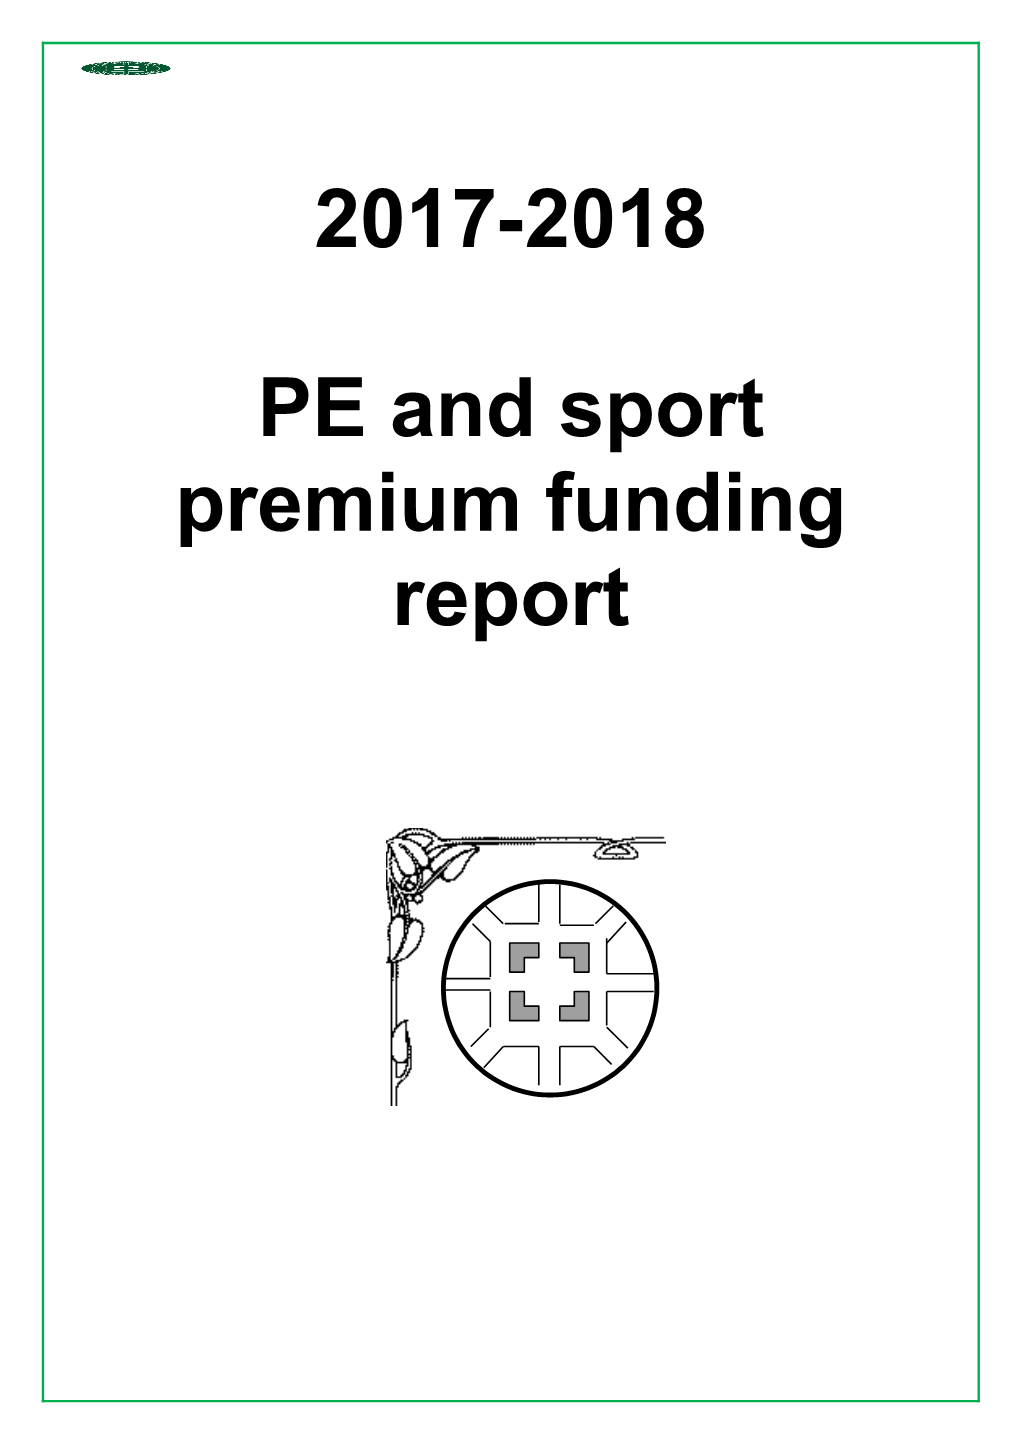 PE and Sport Premium Funding Report